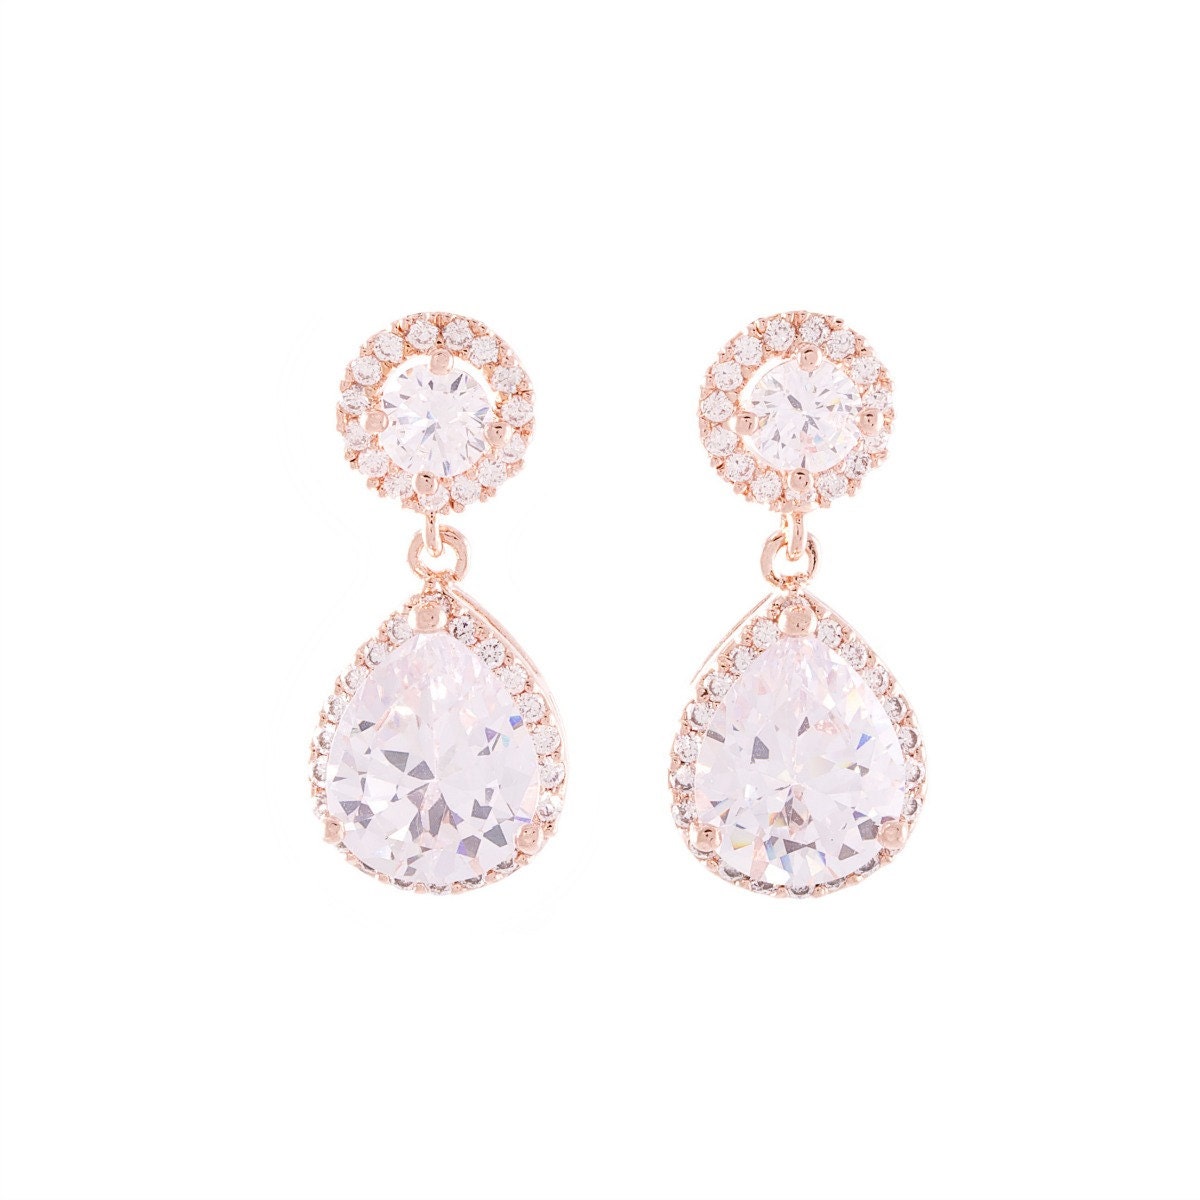 Rose Gold Earrings Bridal Crystal Earrings by LavenderByJurgita